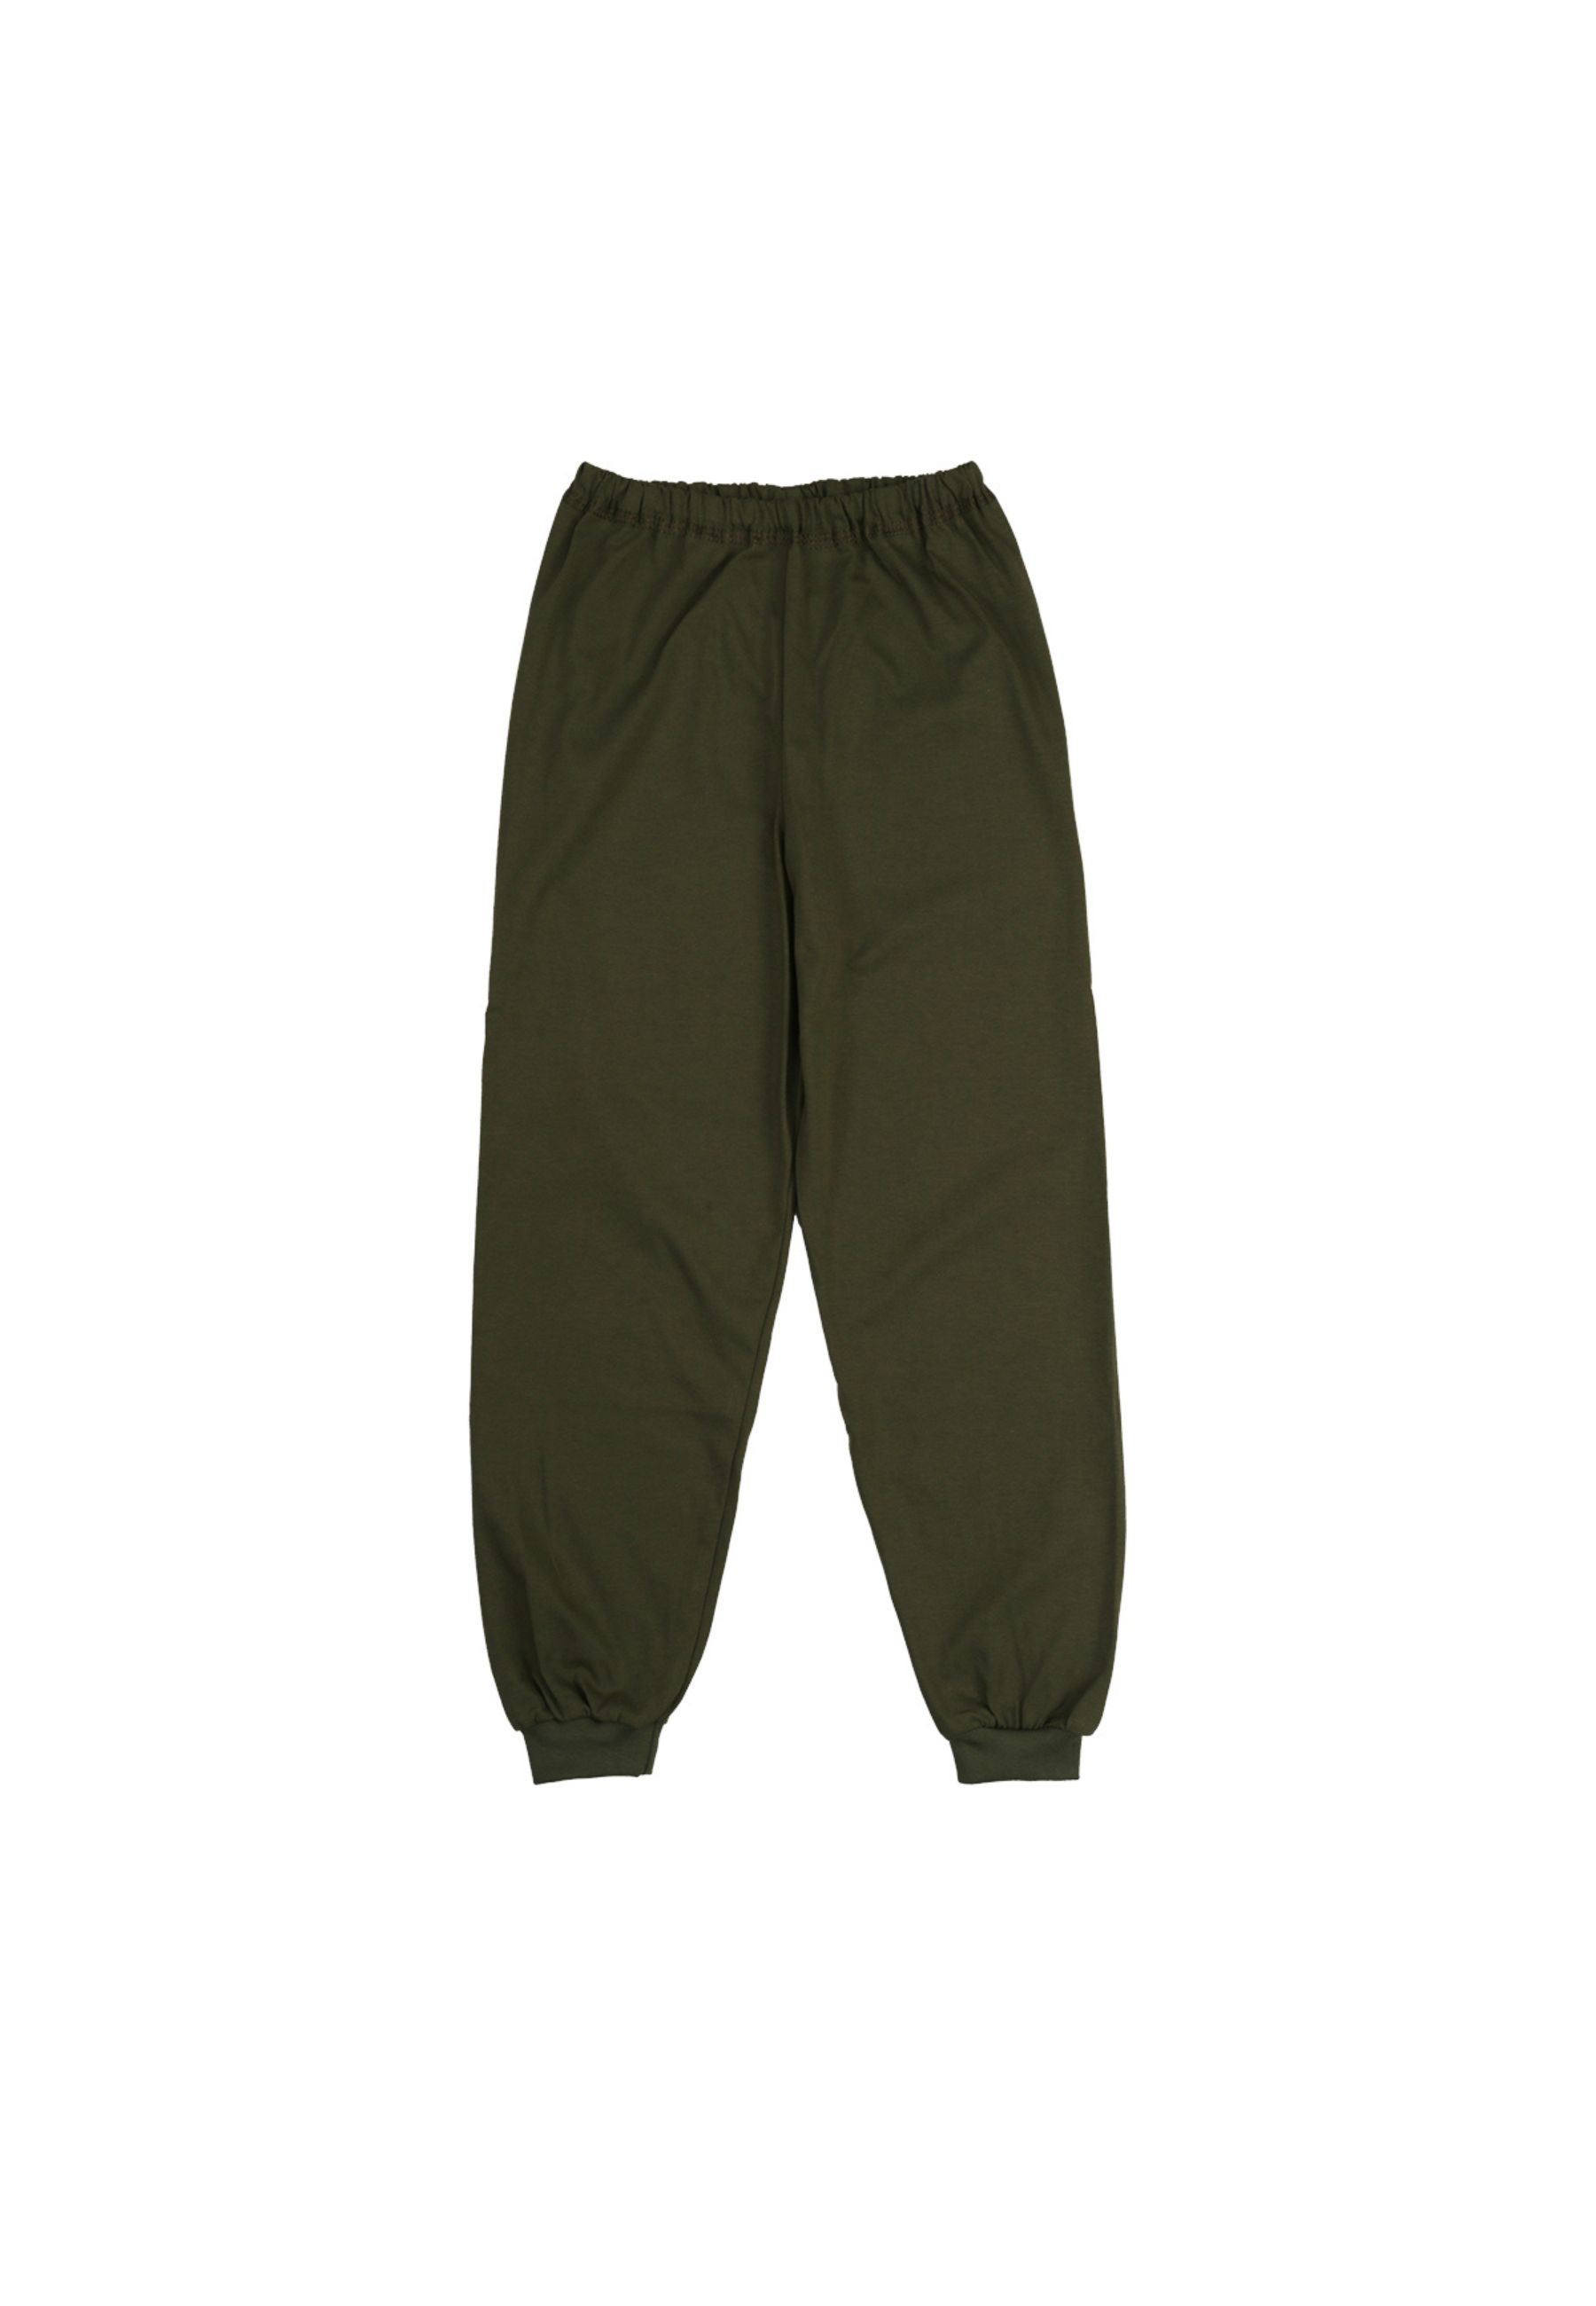 Tup-Tup, piżama dziecięca, PREMIUM, 100% bawełna, zielona